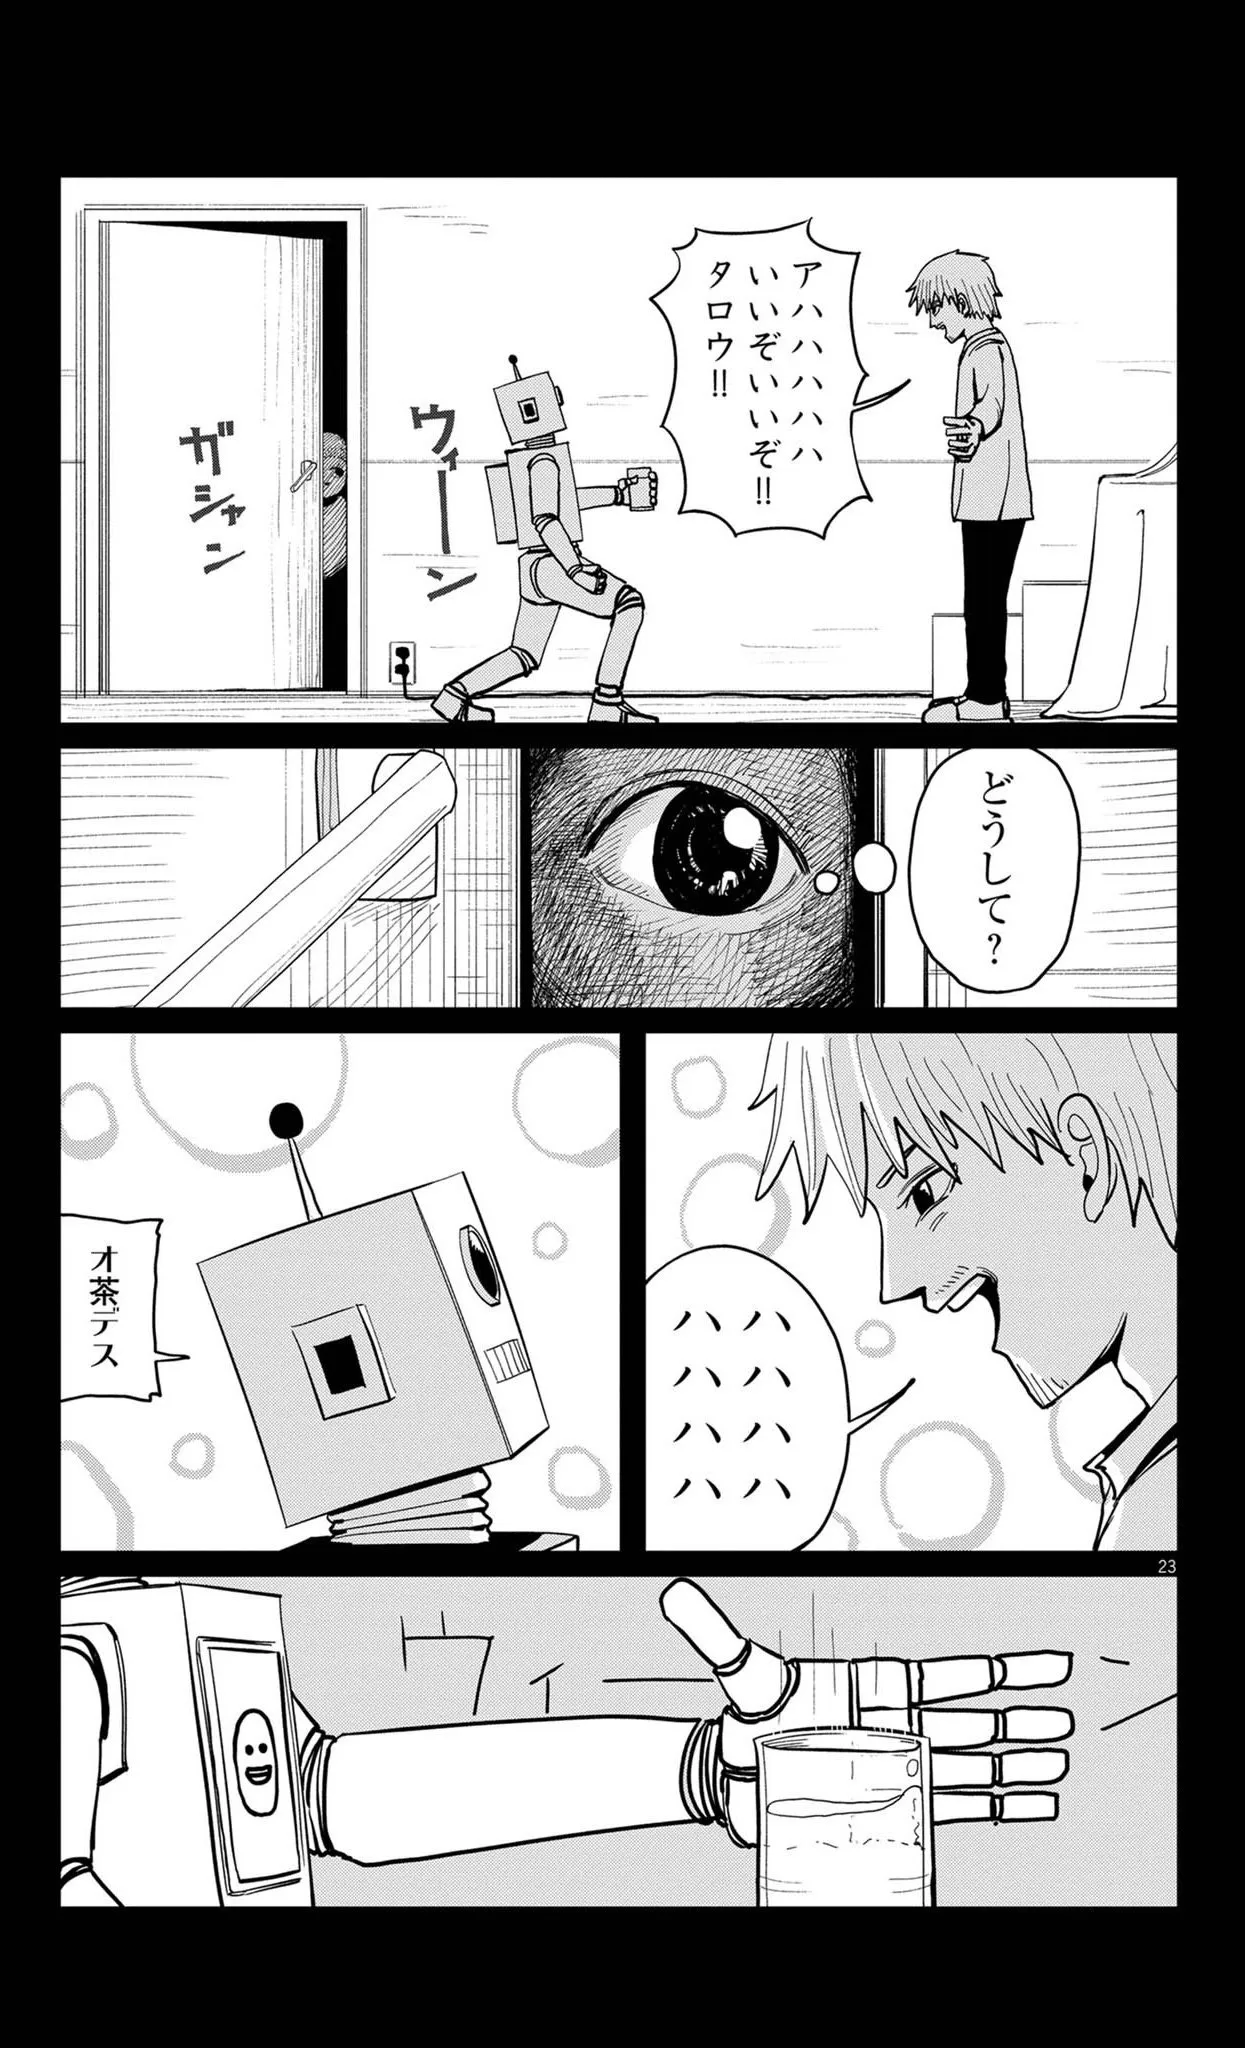 「Mr.ロボット」(23／62)